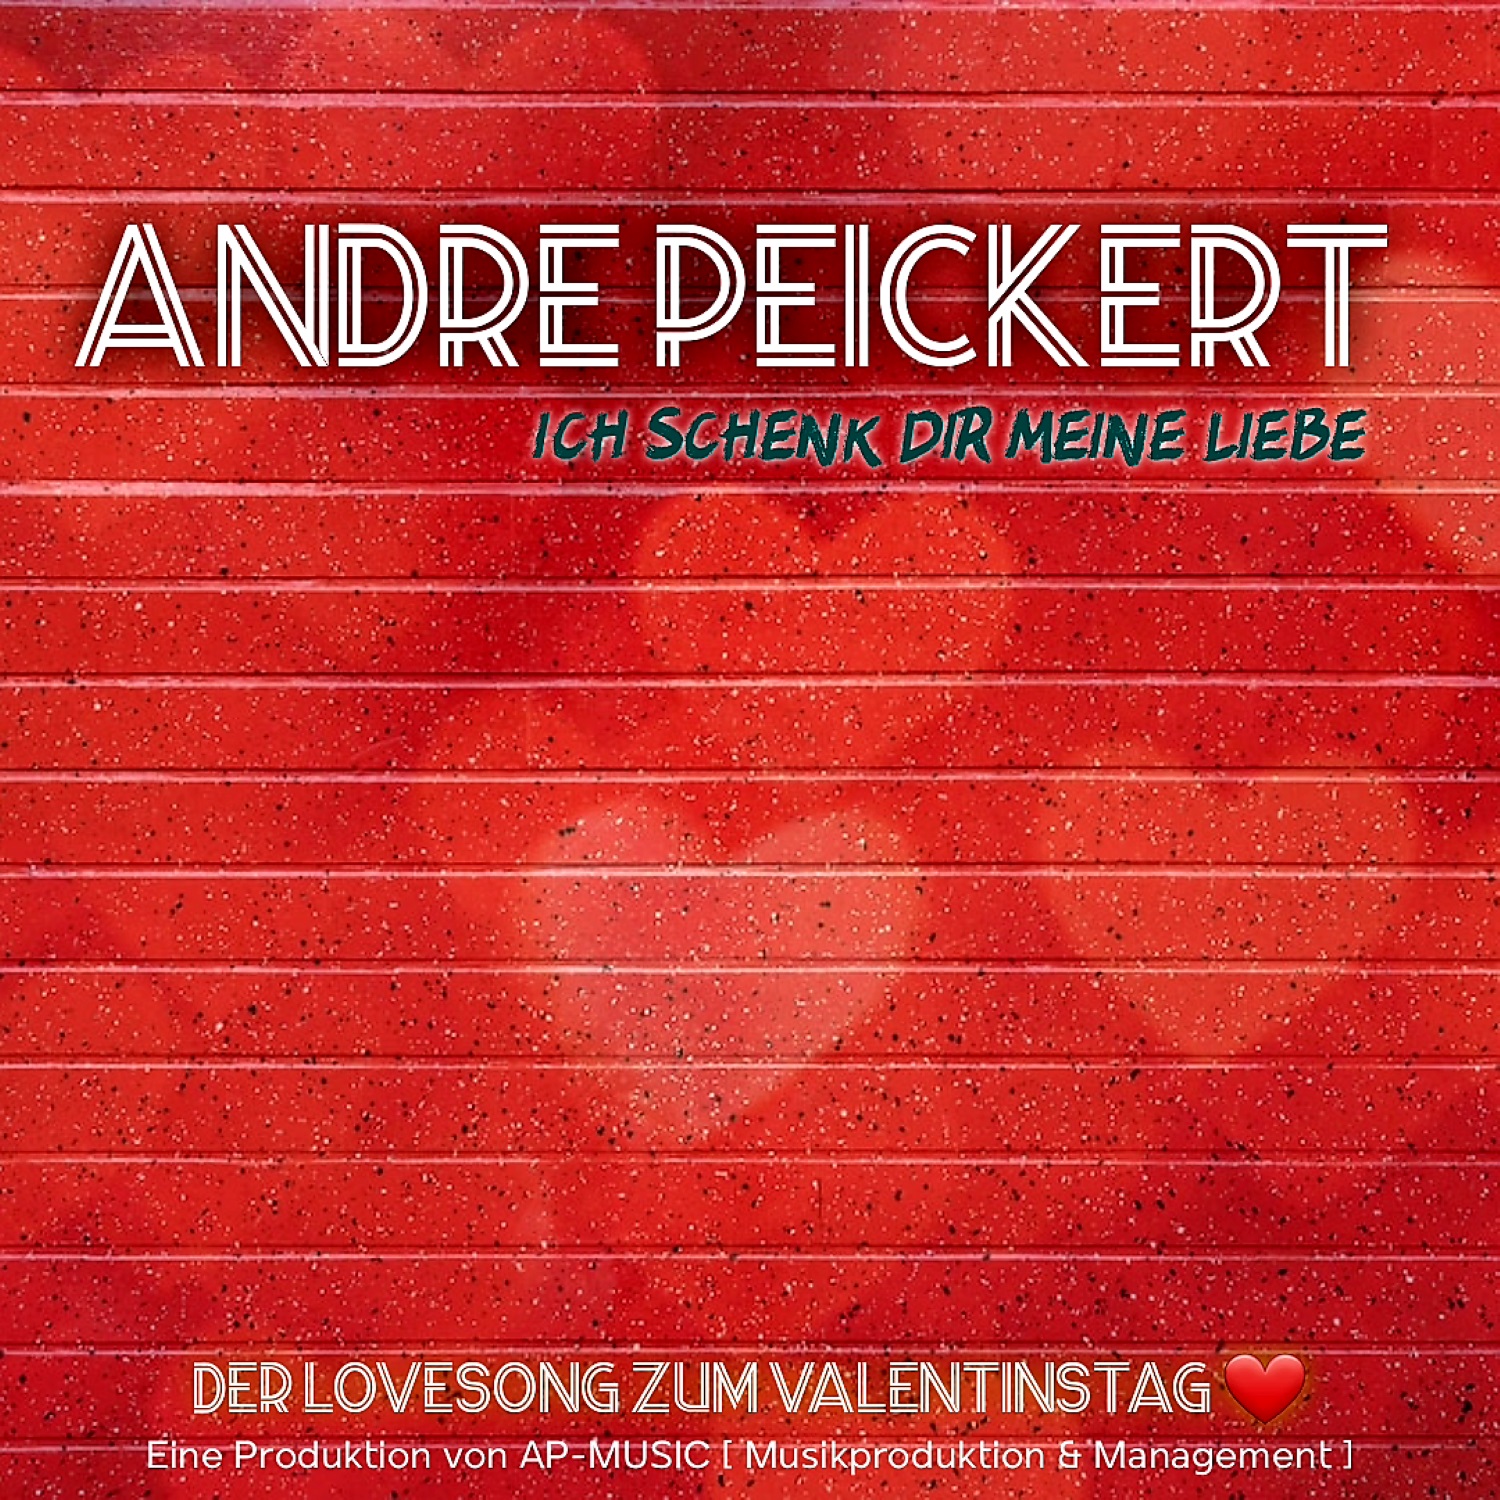 Andre Peickert - Ich schenk Dir meine Liebe - Cover.jpg